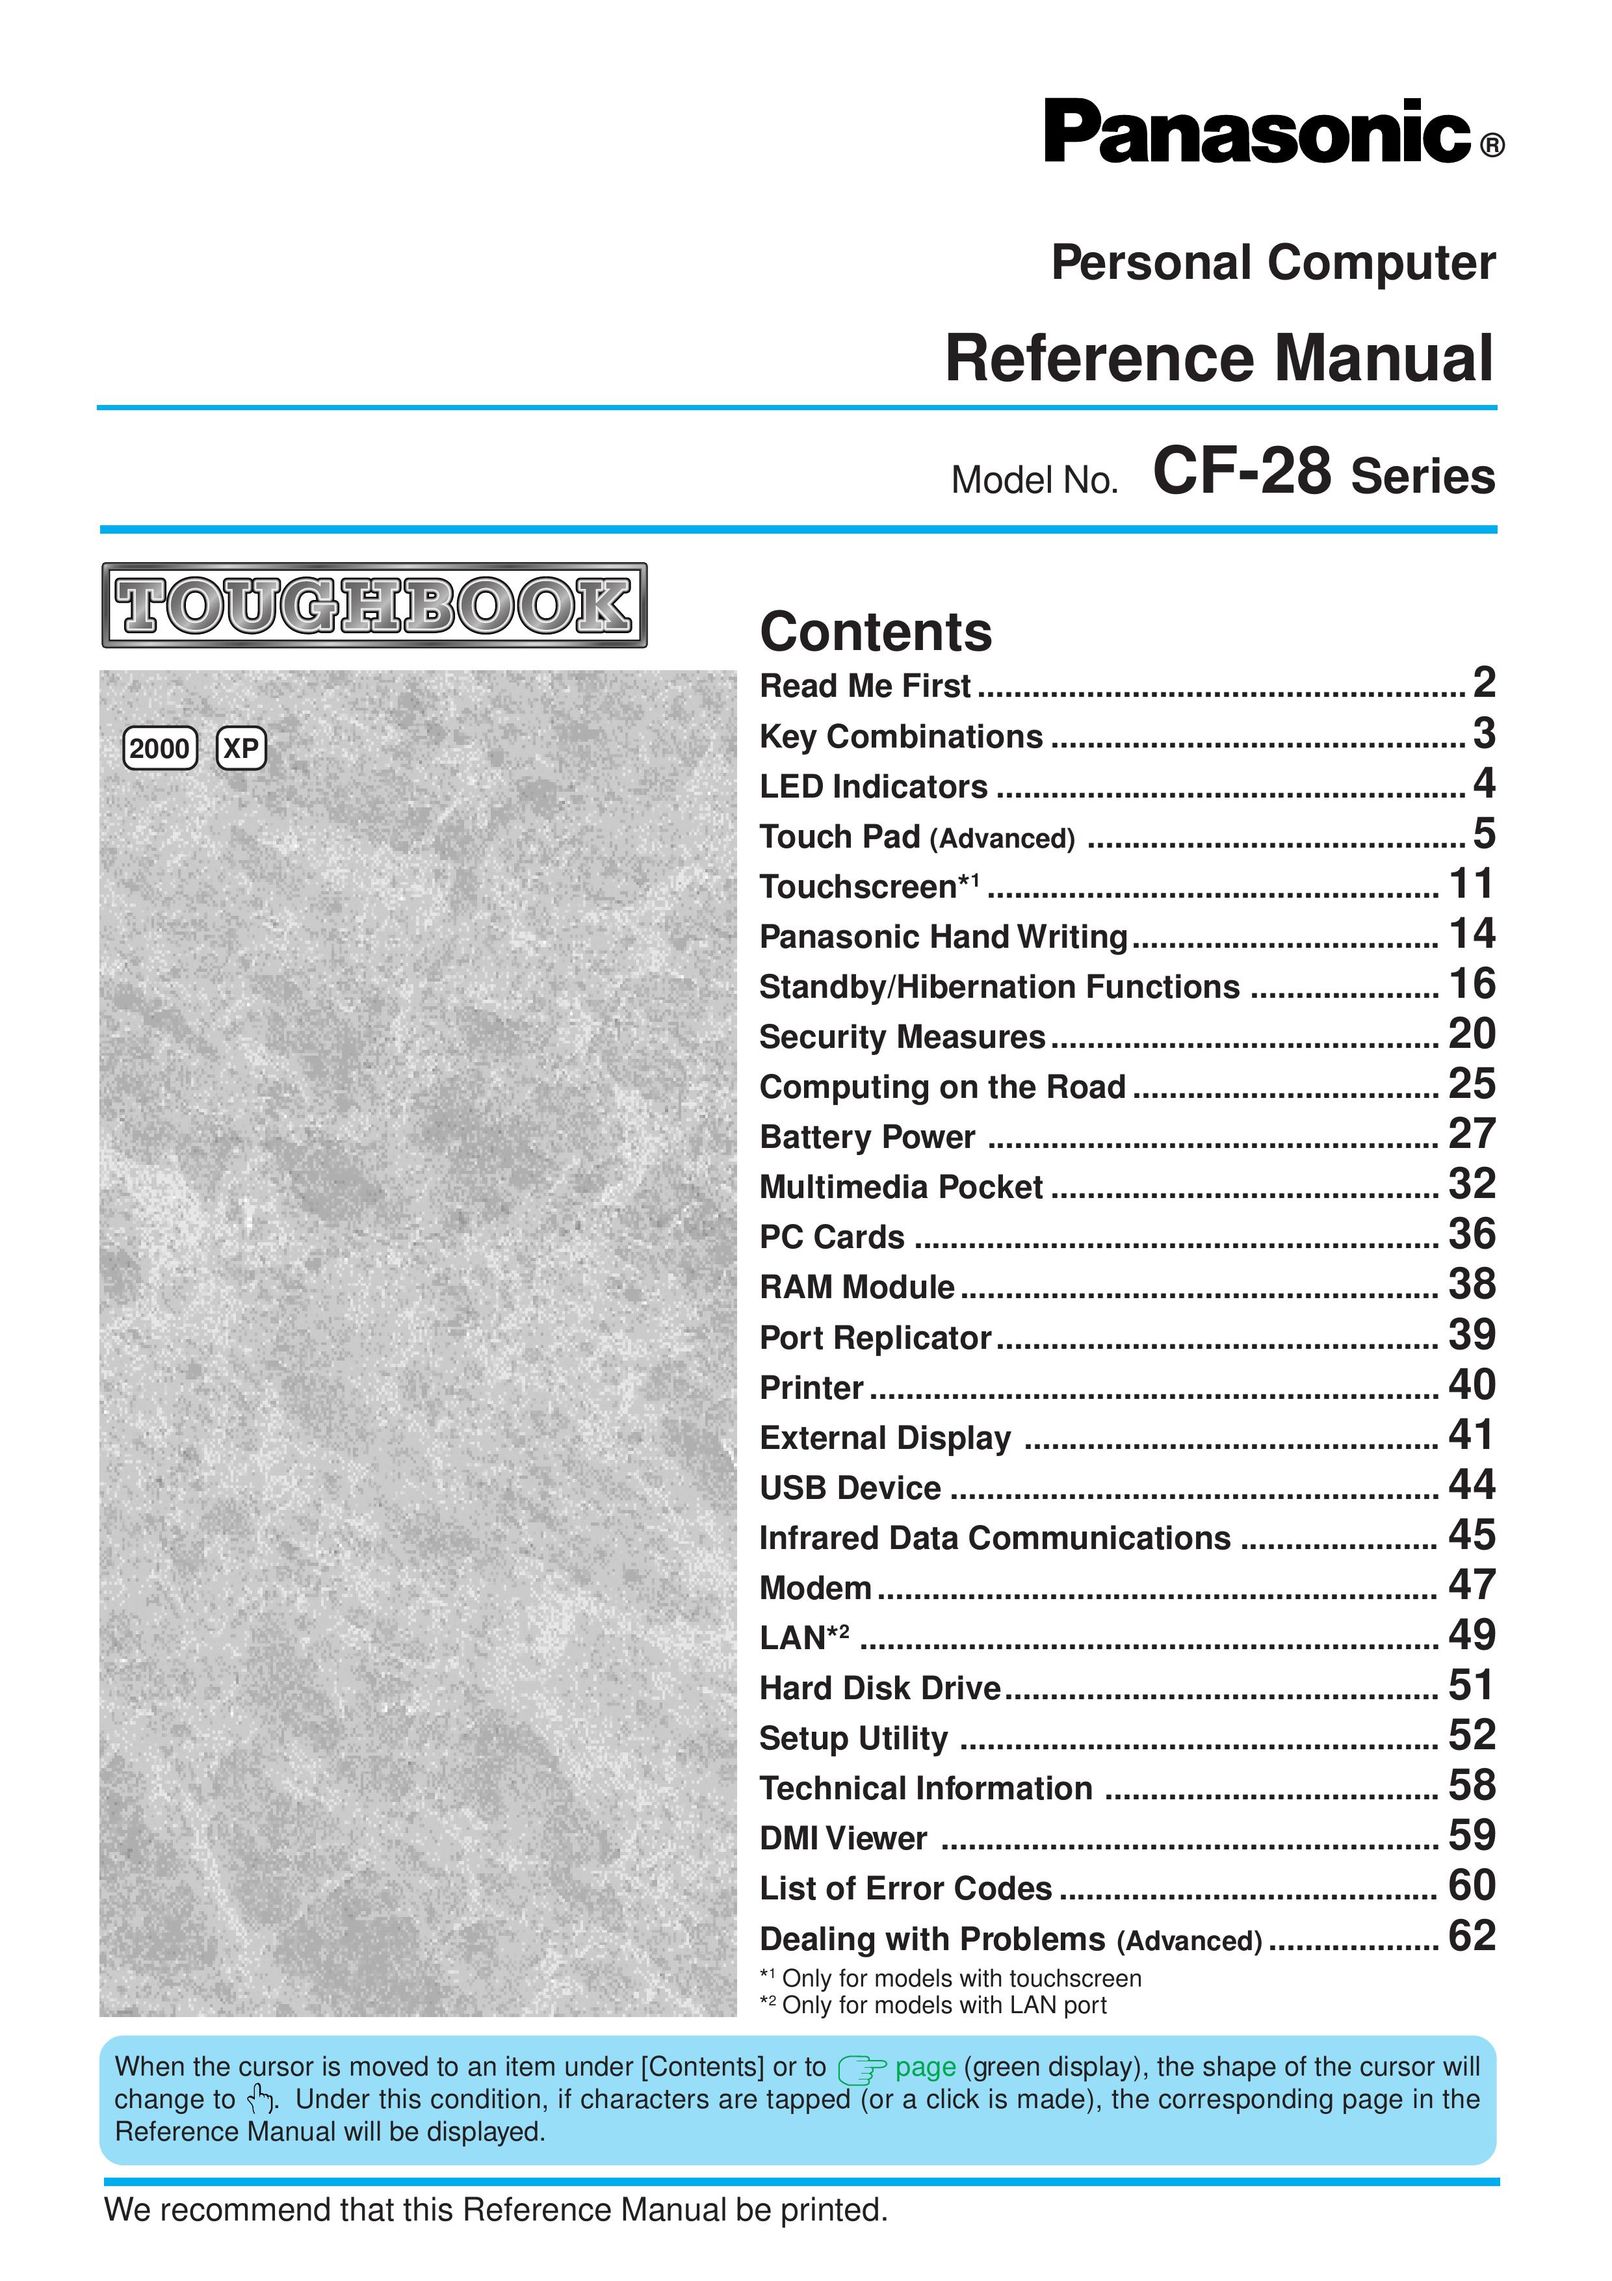 Panasonic CF-28 Personal Computer User Manual